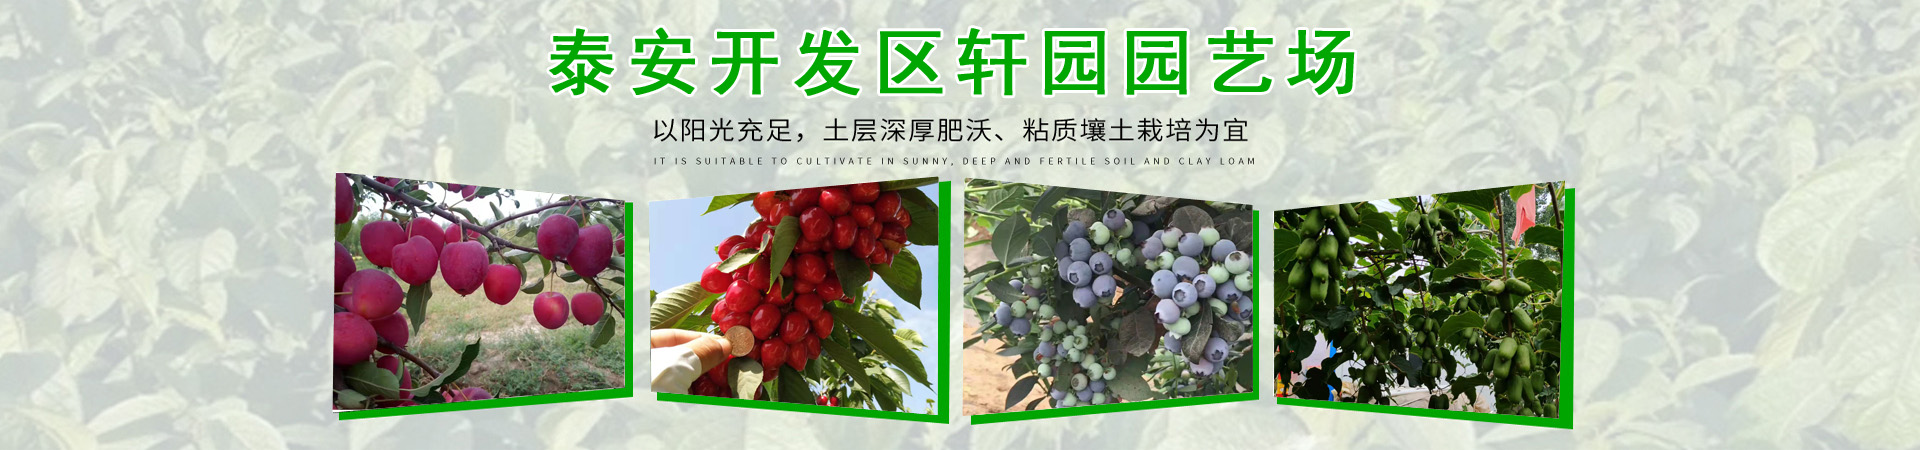 蓝莓苗、上海本地蓝莓苗、上海、上海蓝莓苗